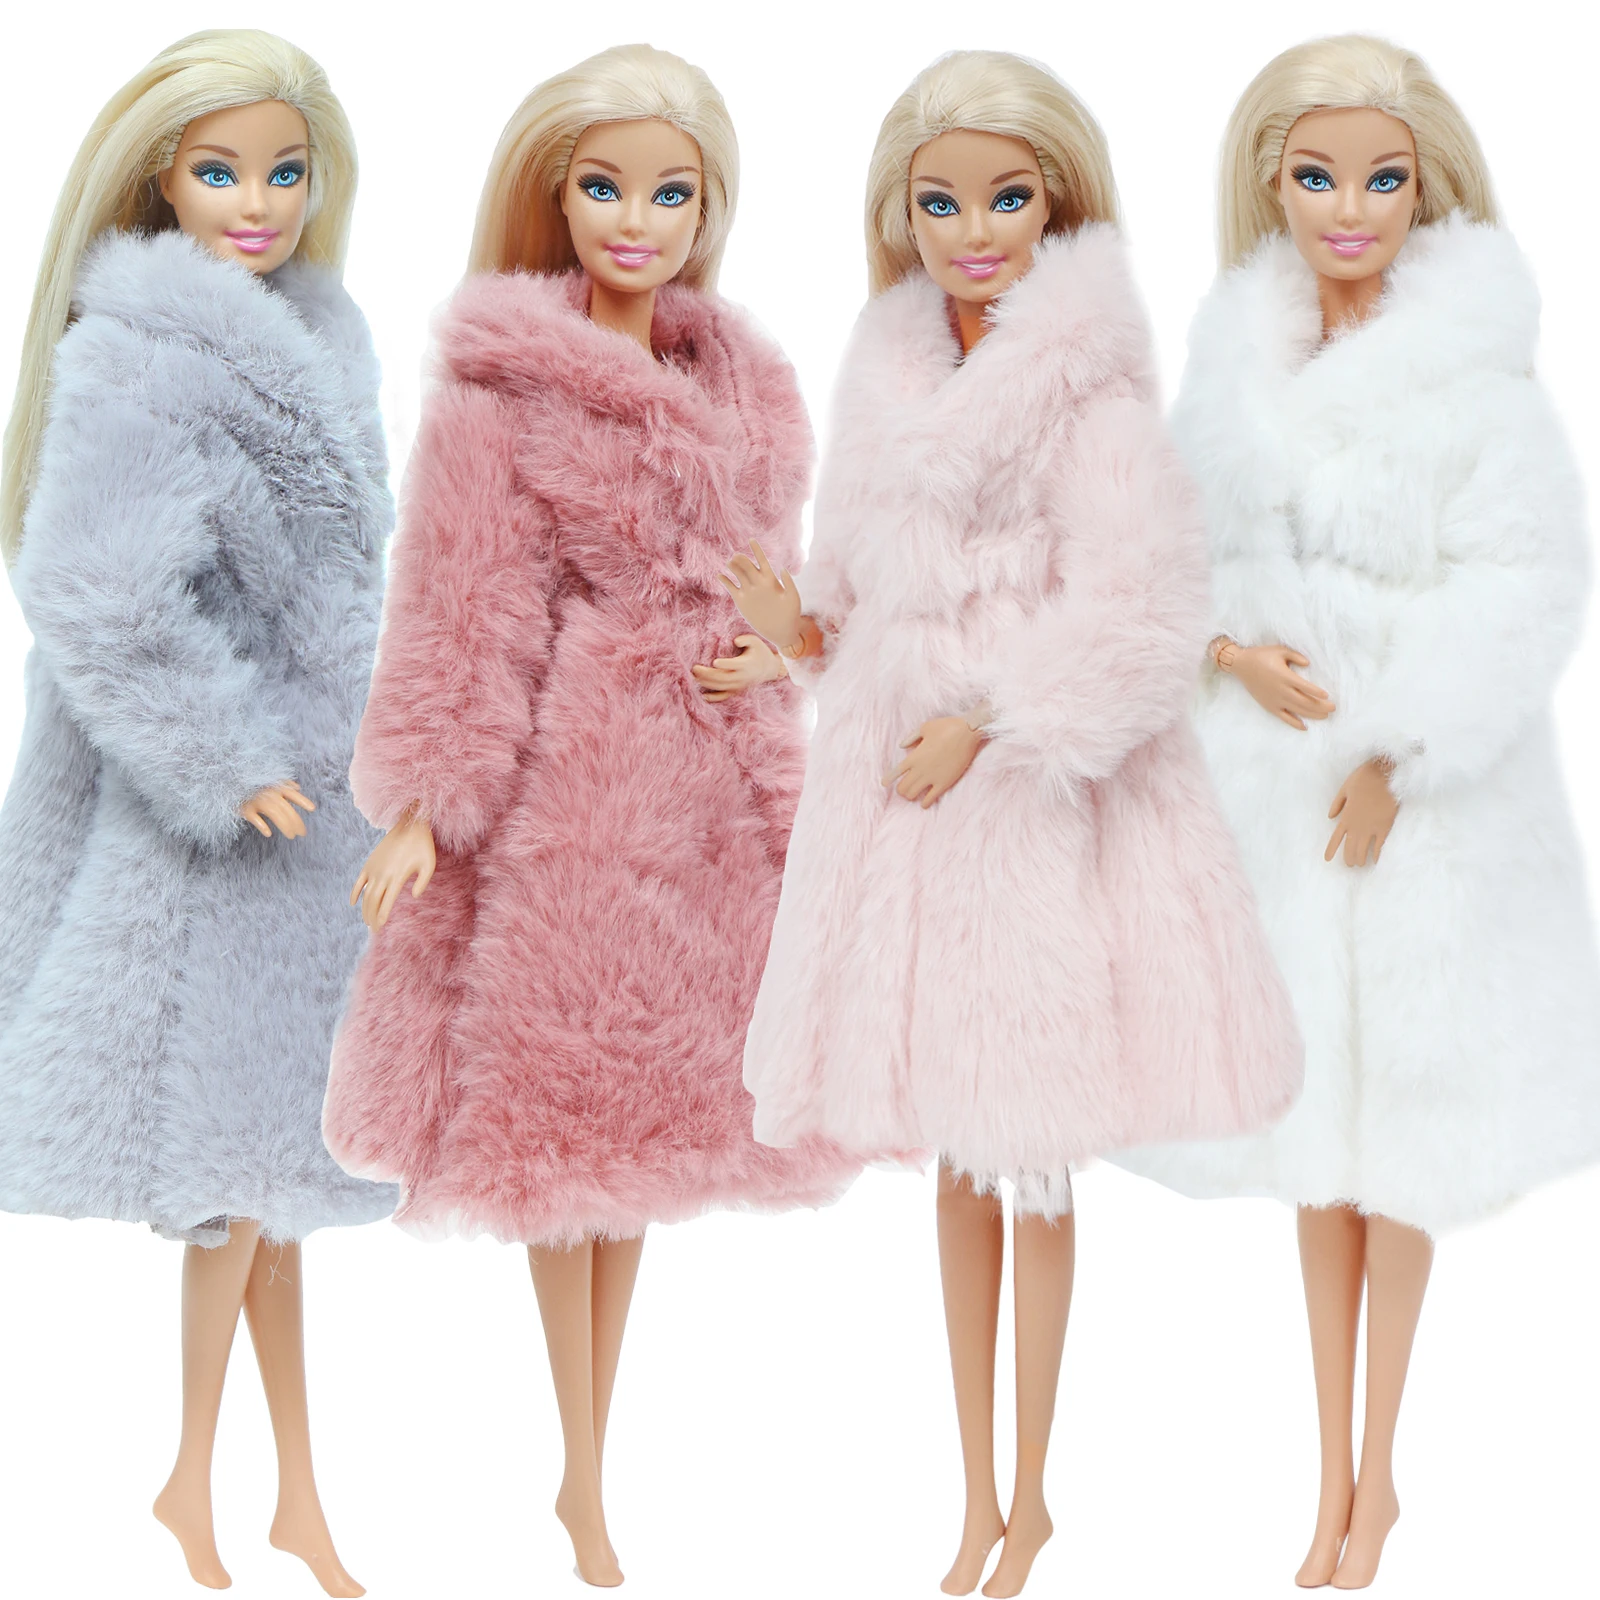 Multicolor 1 Conjunto de manga larga abrigo de piel suave Tops vestido de invierno Casual Ropa Accesorios ropa para muñeca Barbie niños juguete